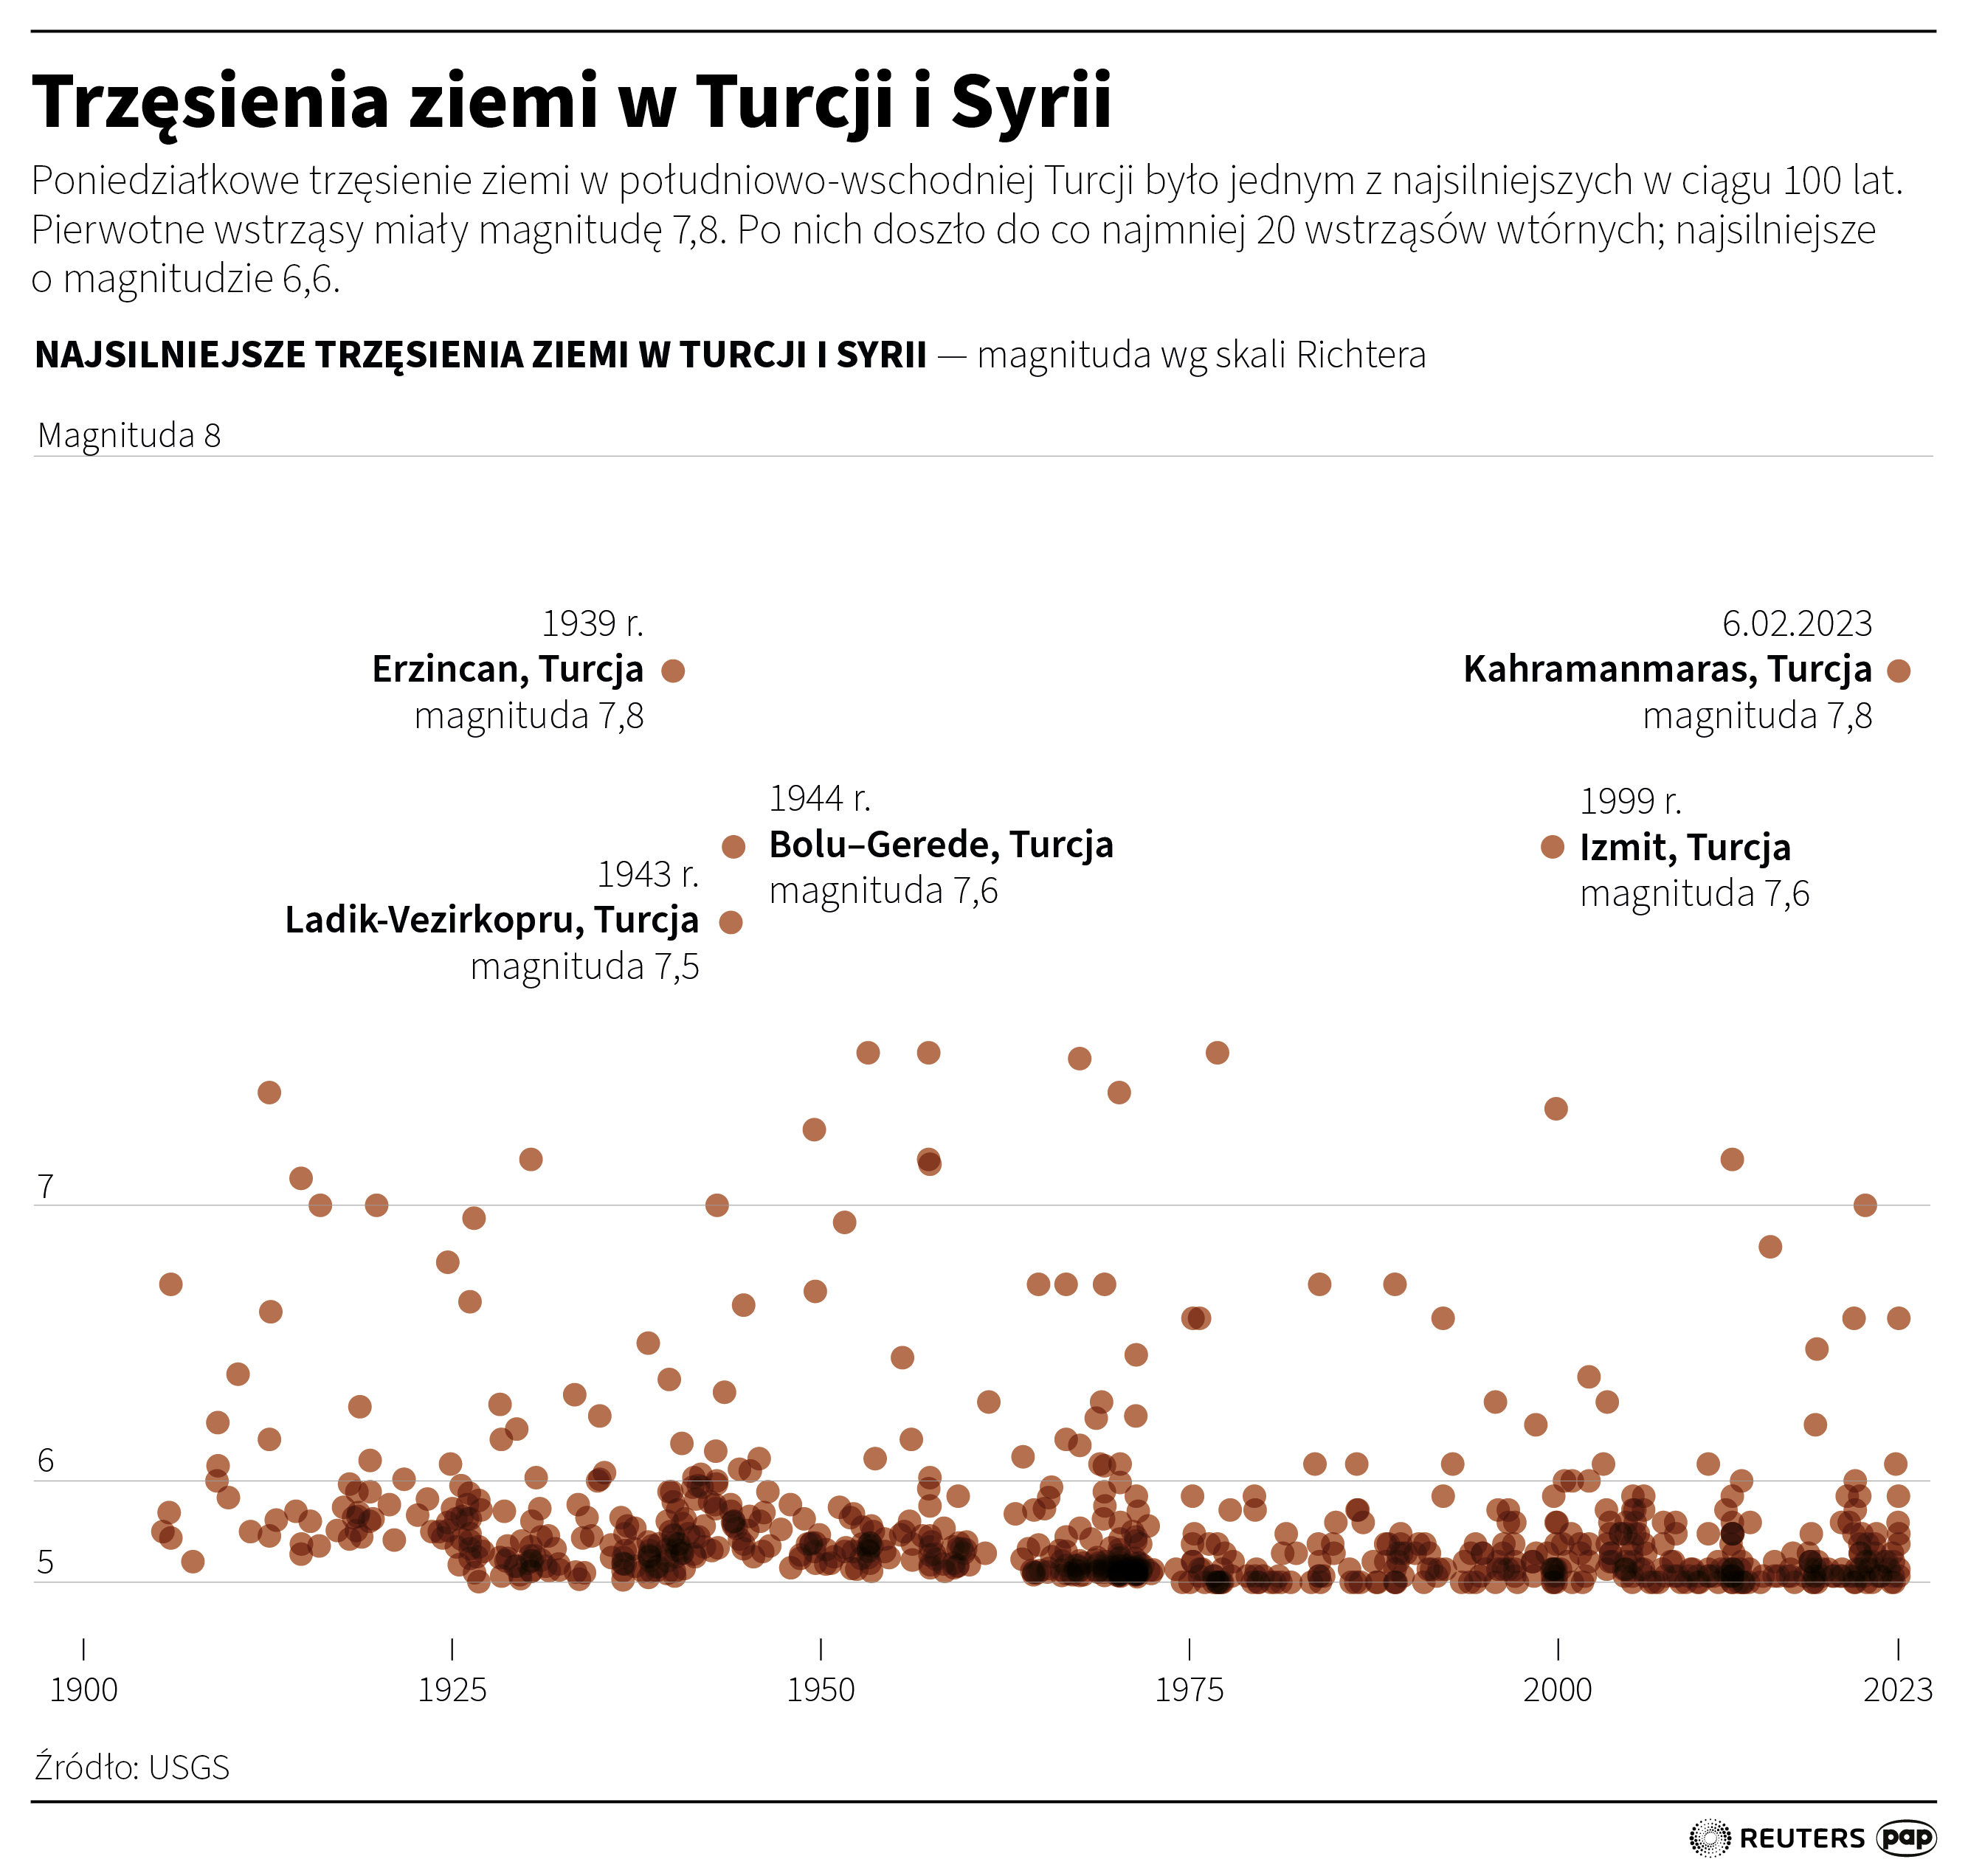 Trzęsienia ziemi w Turcji i Syrii, autor: PAP/Maciej Zieliński